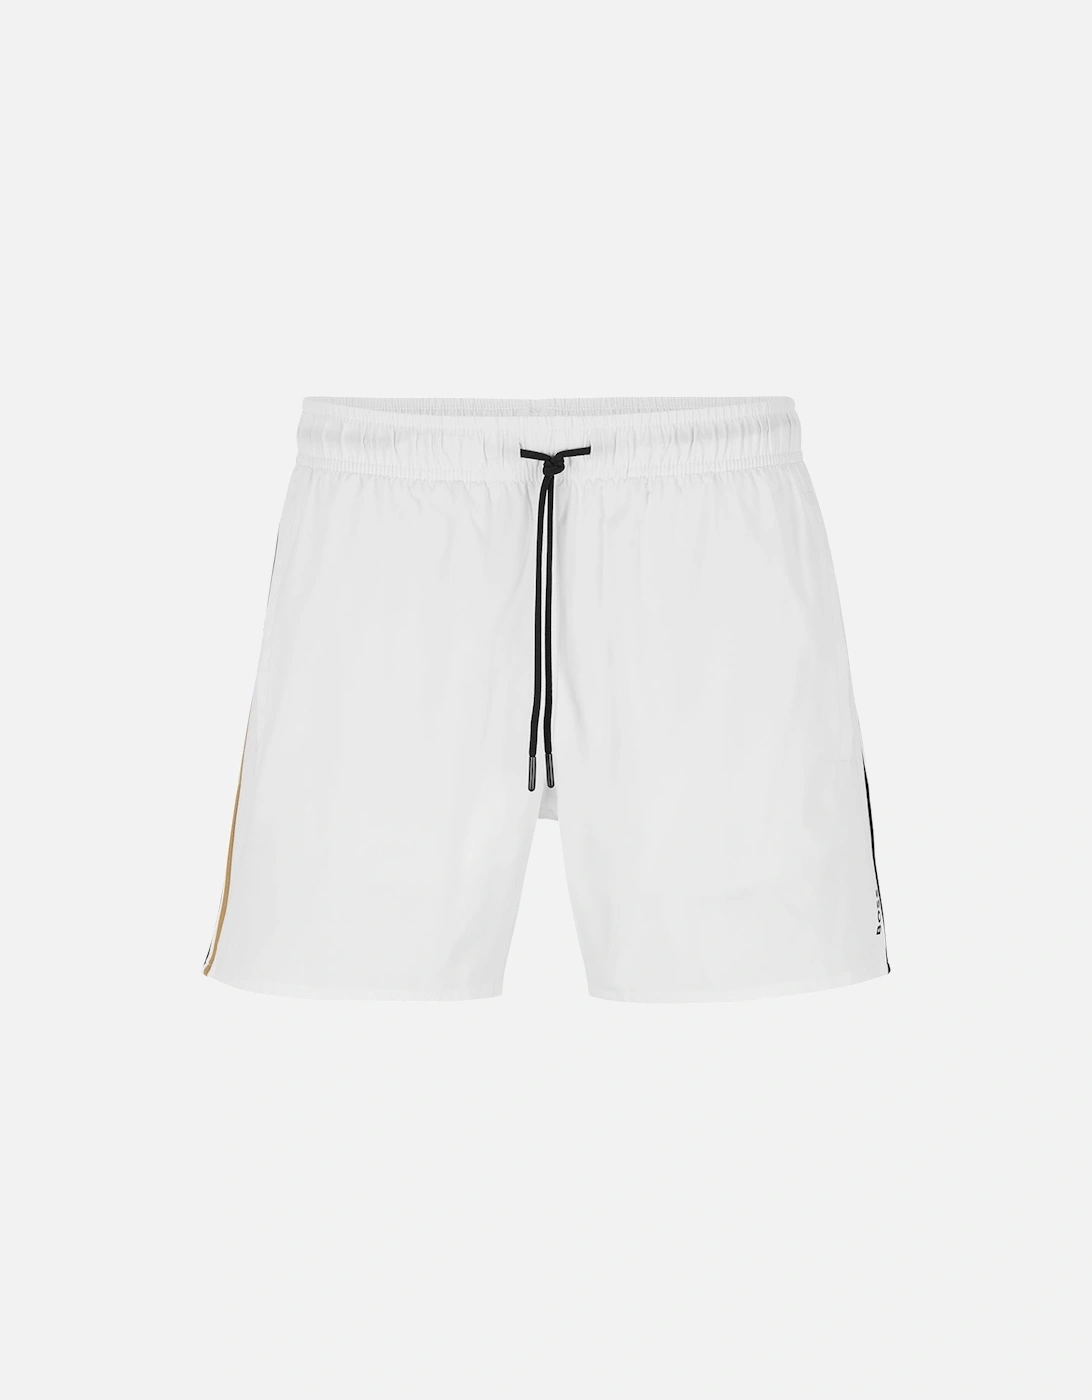 Iconic Swim Shorts, White, 5 of 4